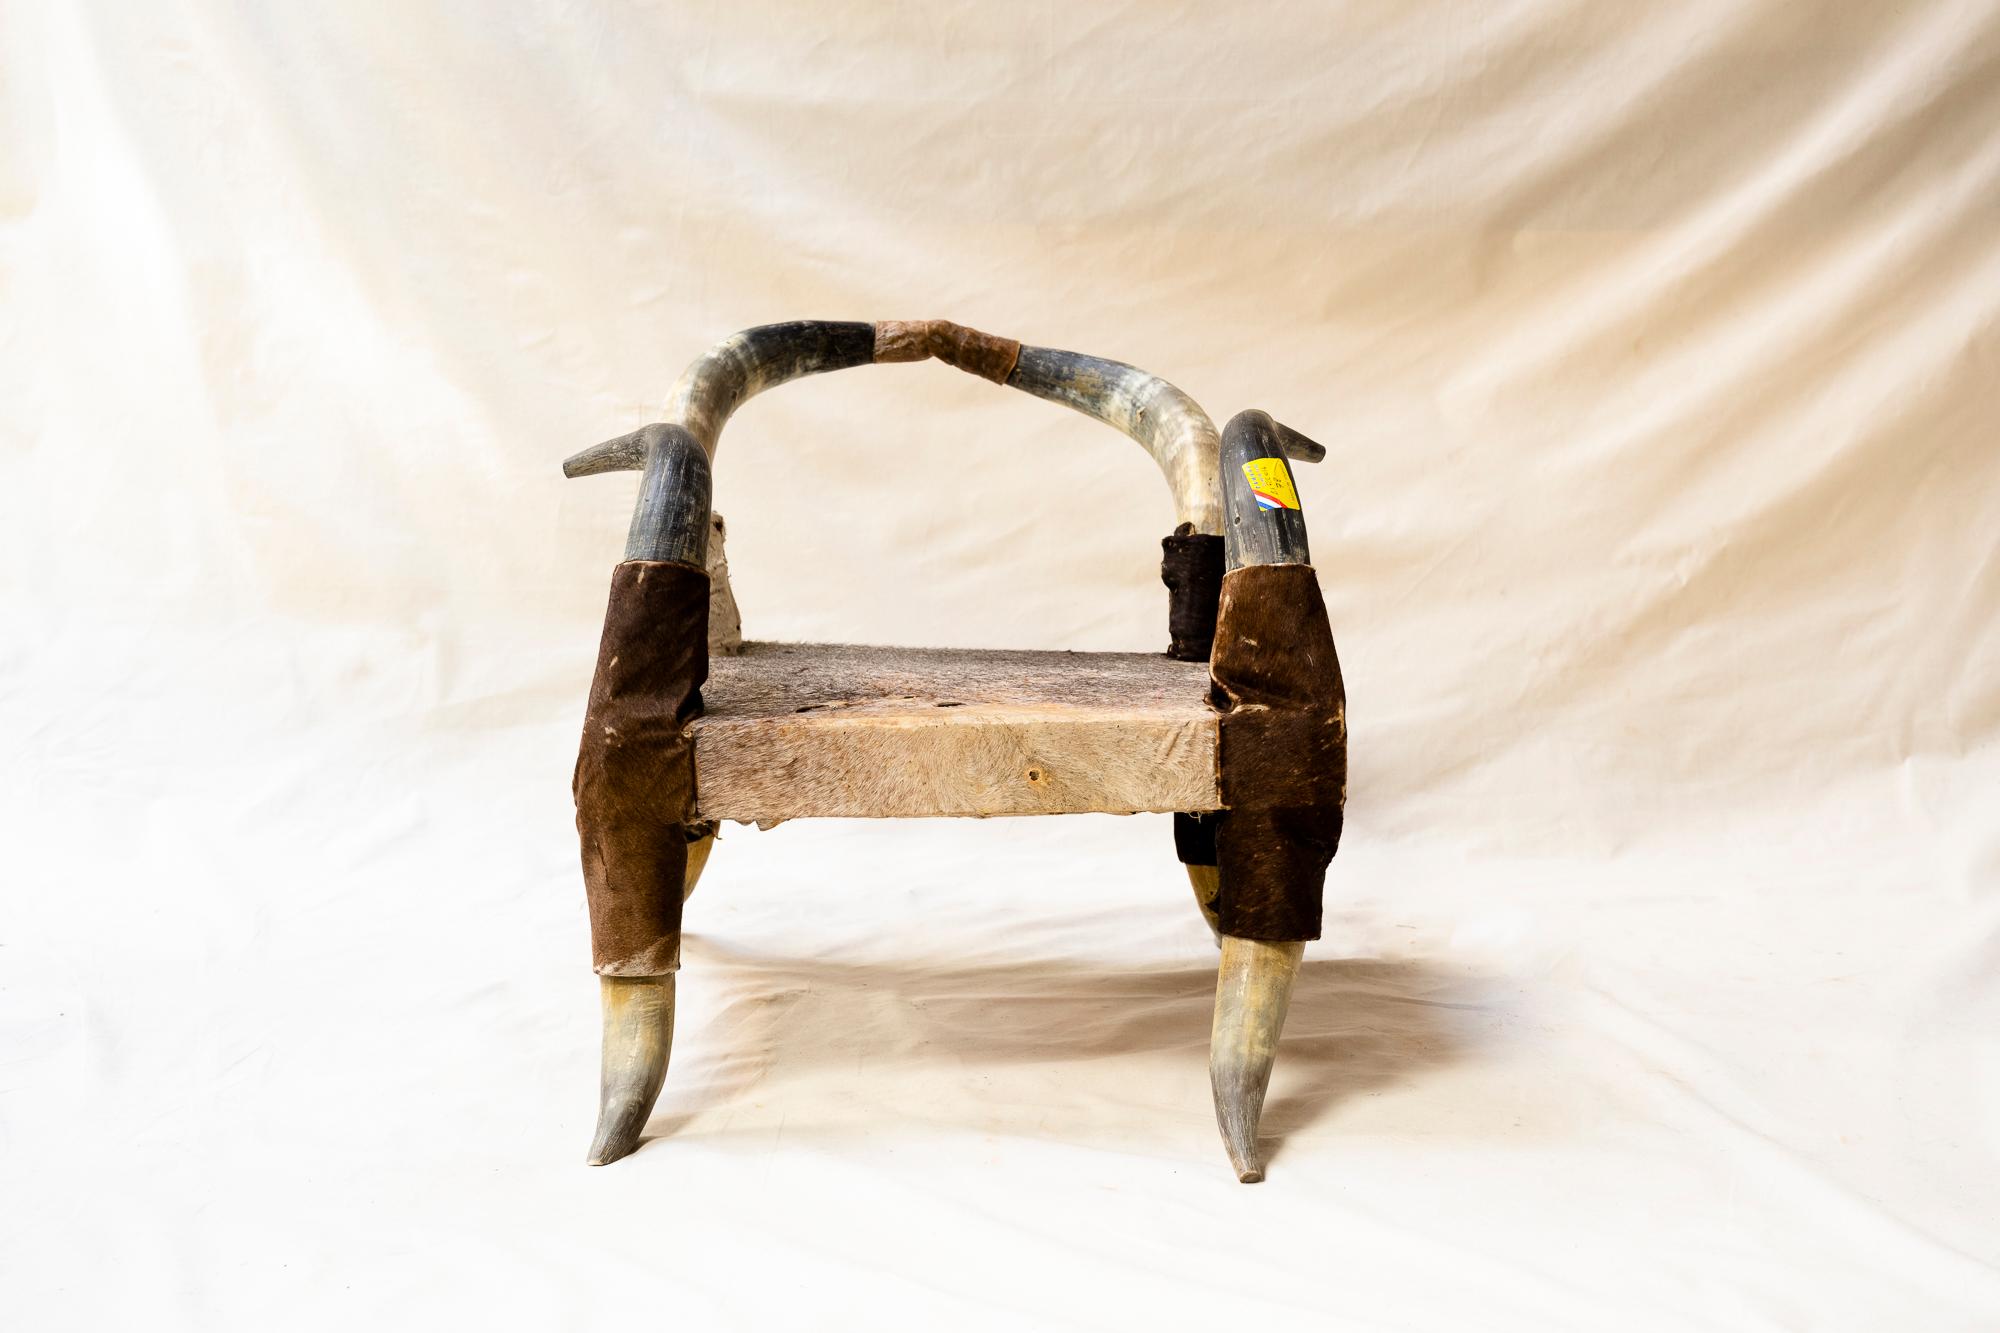 Une suite de 4 chaises longues uniques en cornes et cuir tendu sur une structure en bois. 
D'origine inconnue, peut-être fabriquées à partir de cornes de taureaux et de peaux trouvées au pied des Pyrénées, ces chaises ont été acquises dans la salle